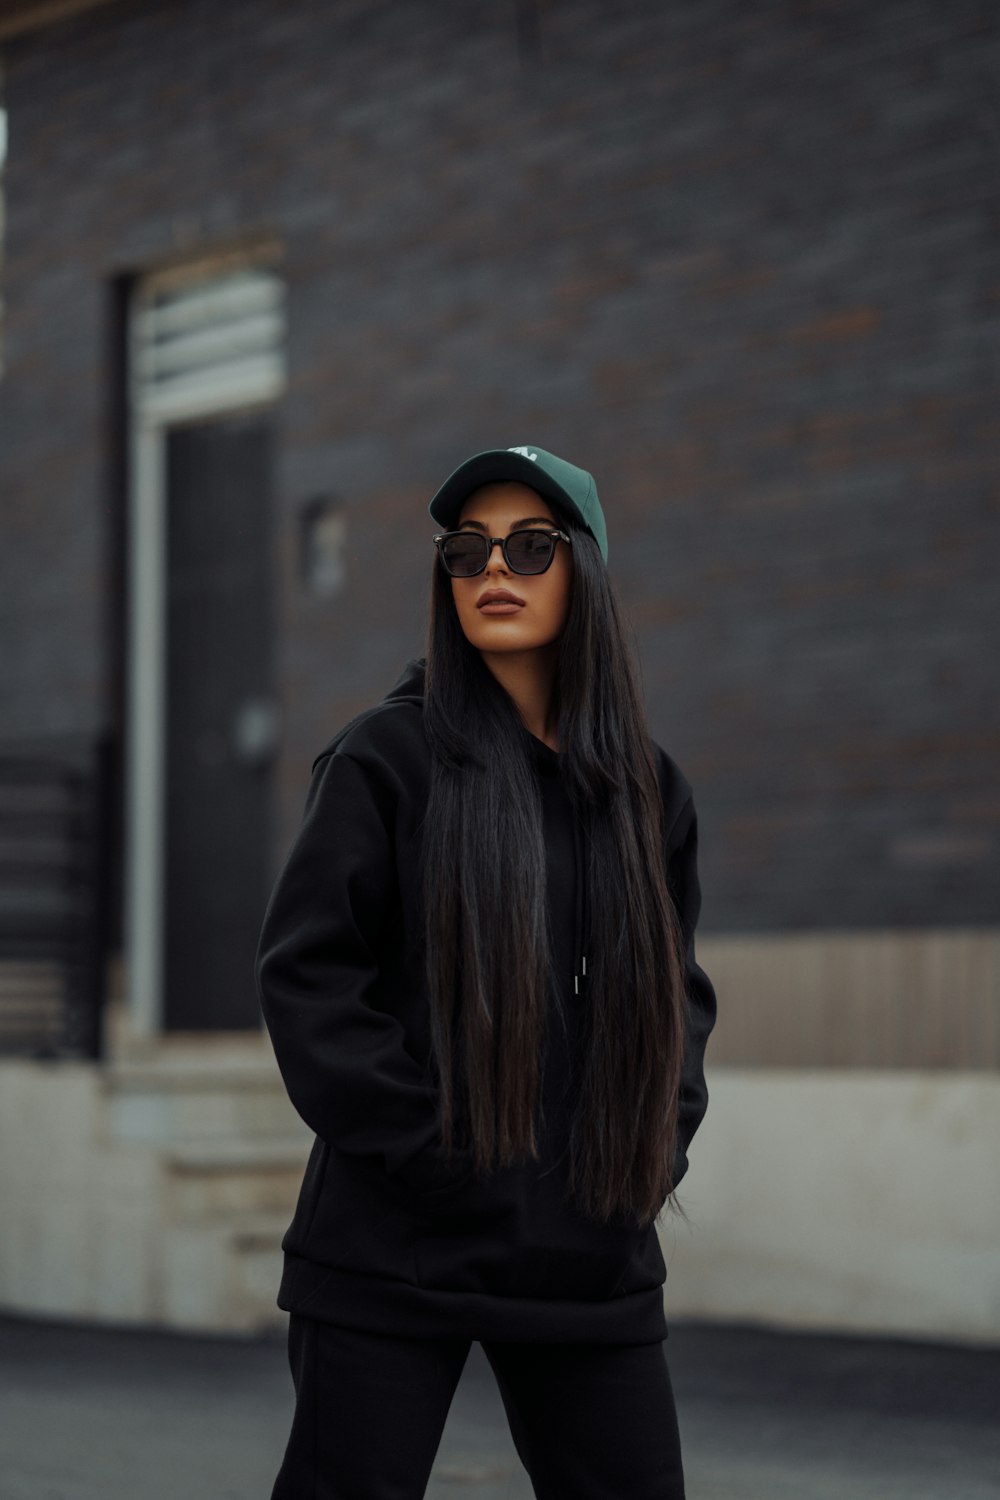 Una donna con i capelli lunghi che indossa occhiali da sole e una felpa  nera con cappuccio foto – Ritratto Immagine gratuita su Unsplash